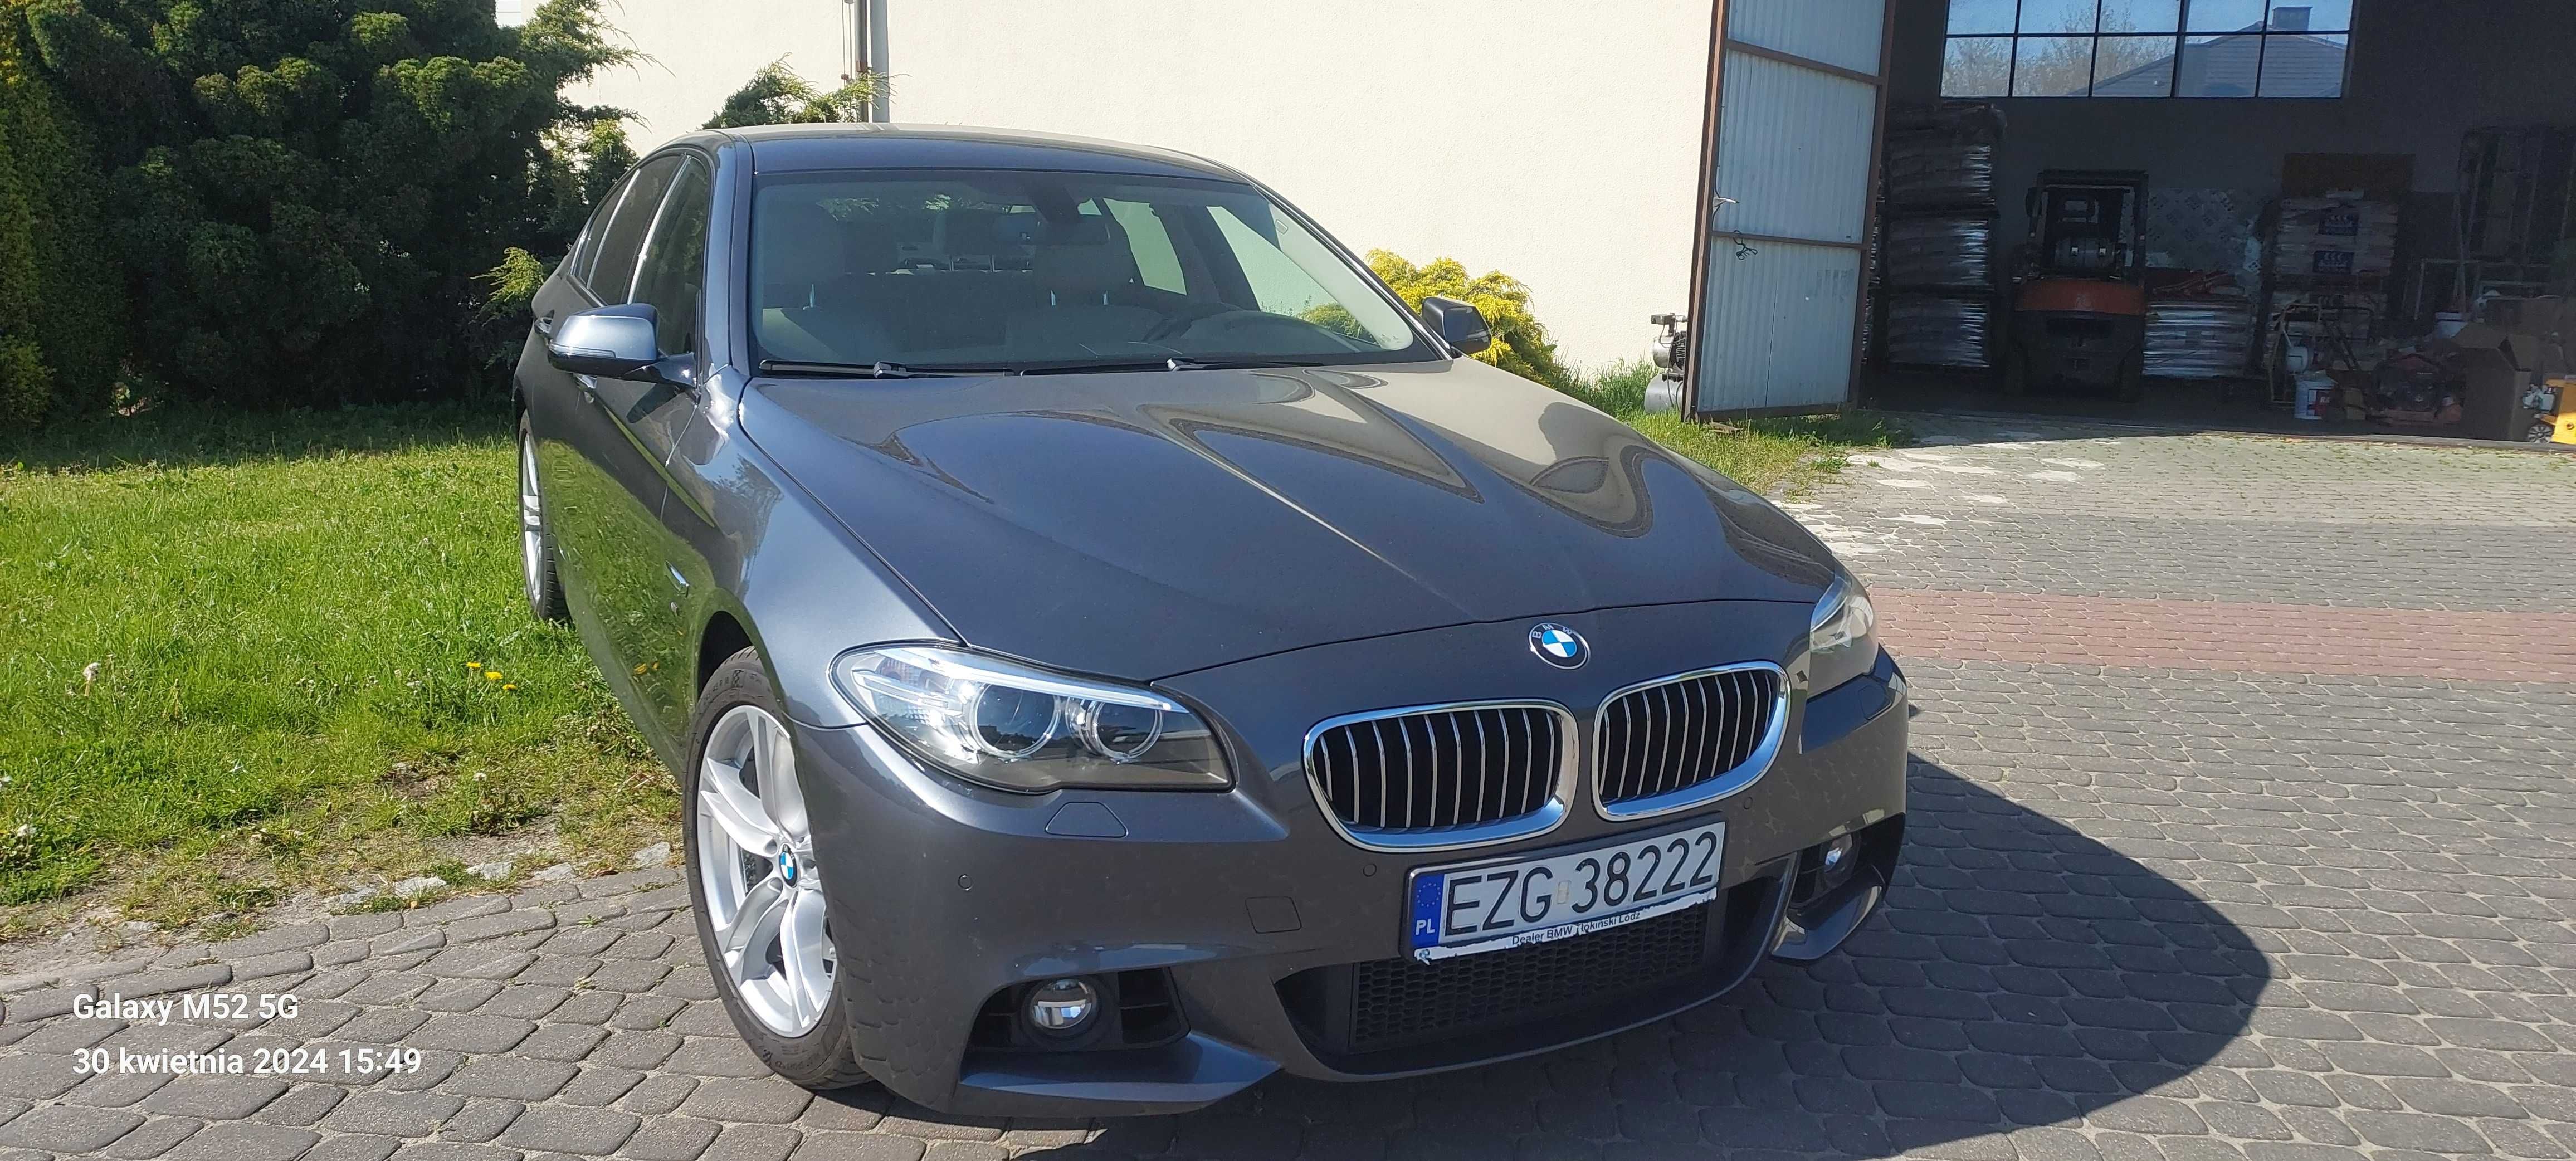 BMW 520d X-drive, 2016 r. 97 600 km, 1-y właściciel, salon Polska